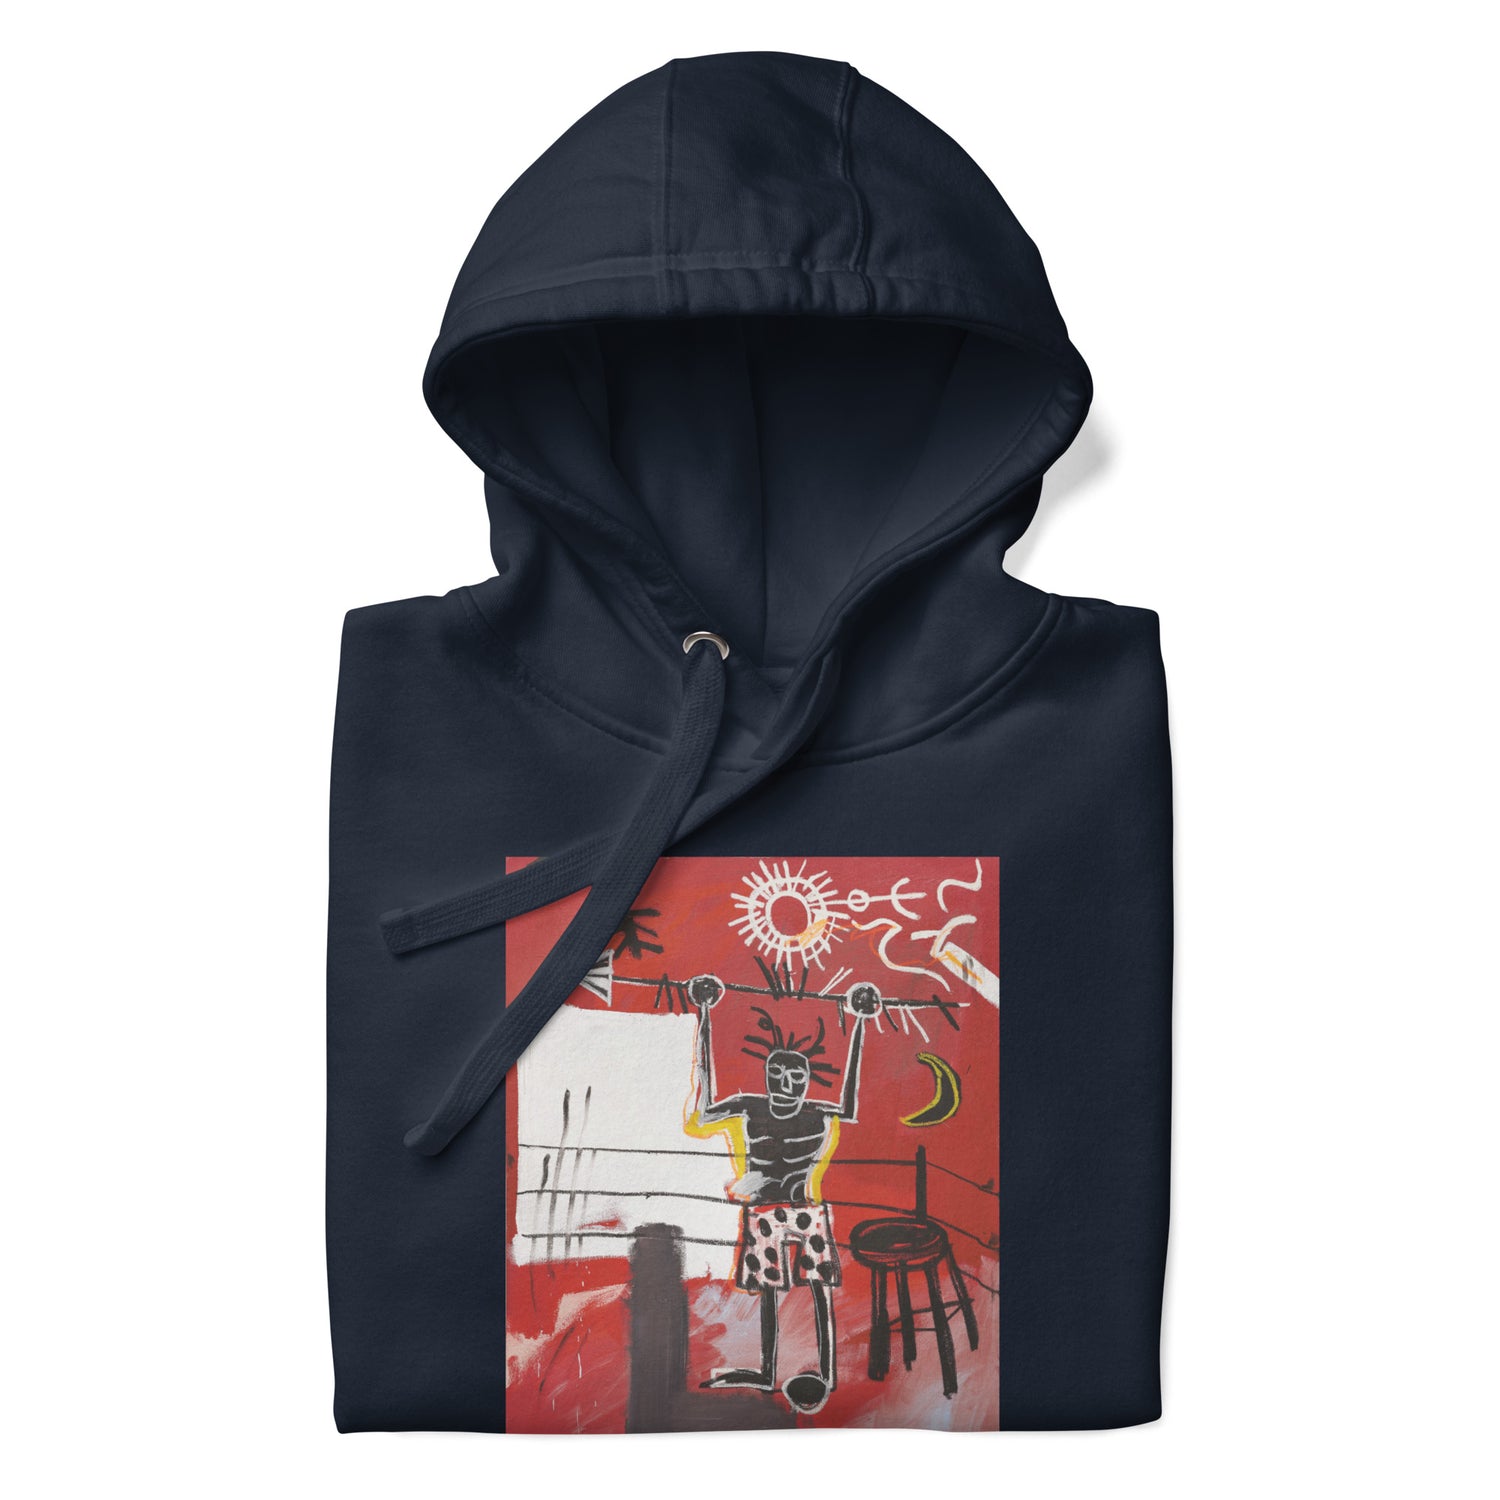 Jean-Michel Basquiat "The Ring" Artwork Printed Premium Streetwear Sweatshirt Hoodie Navy Blue